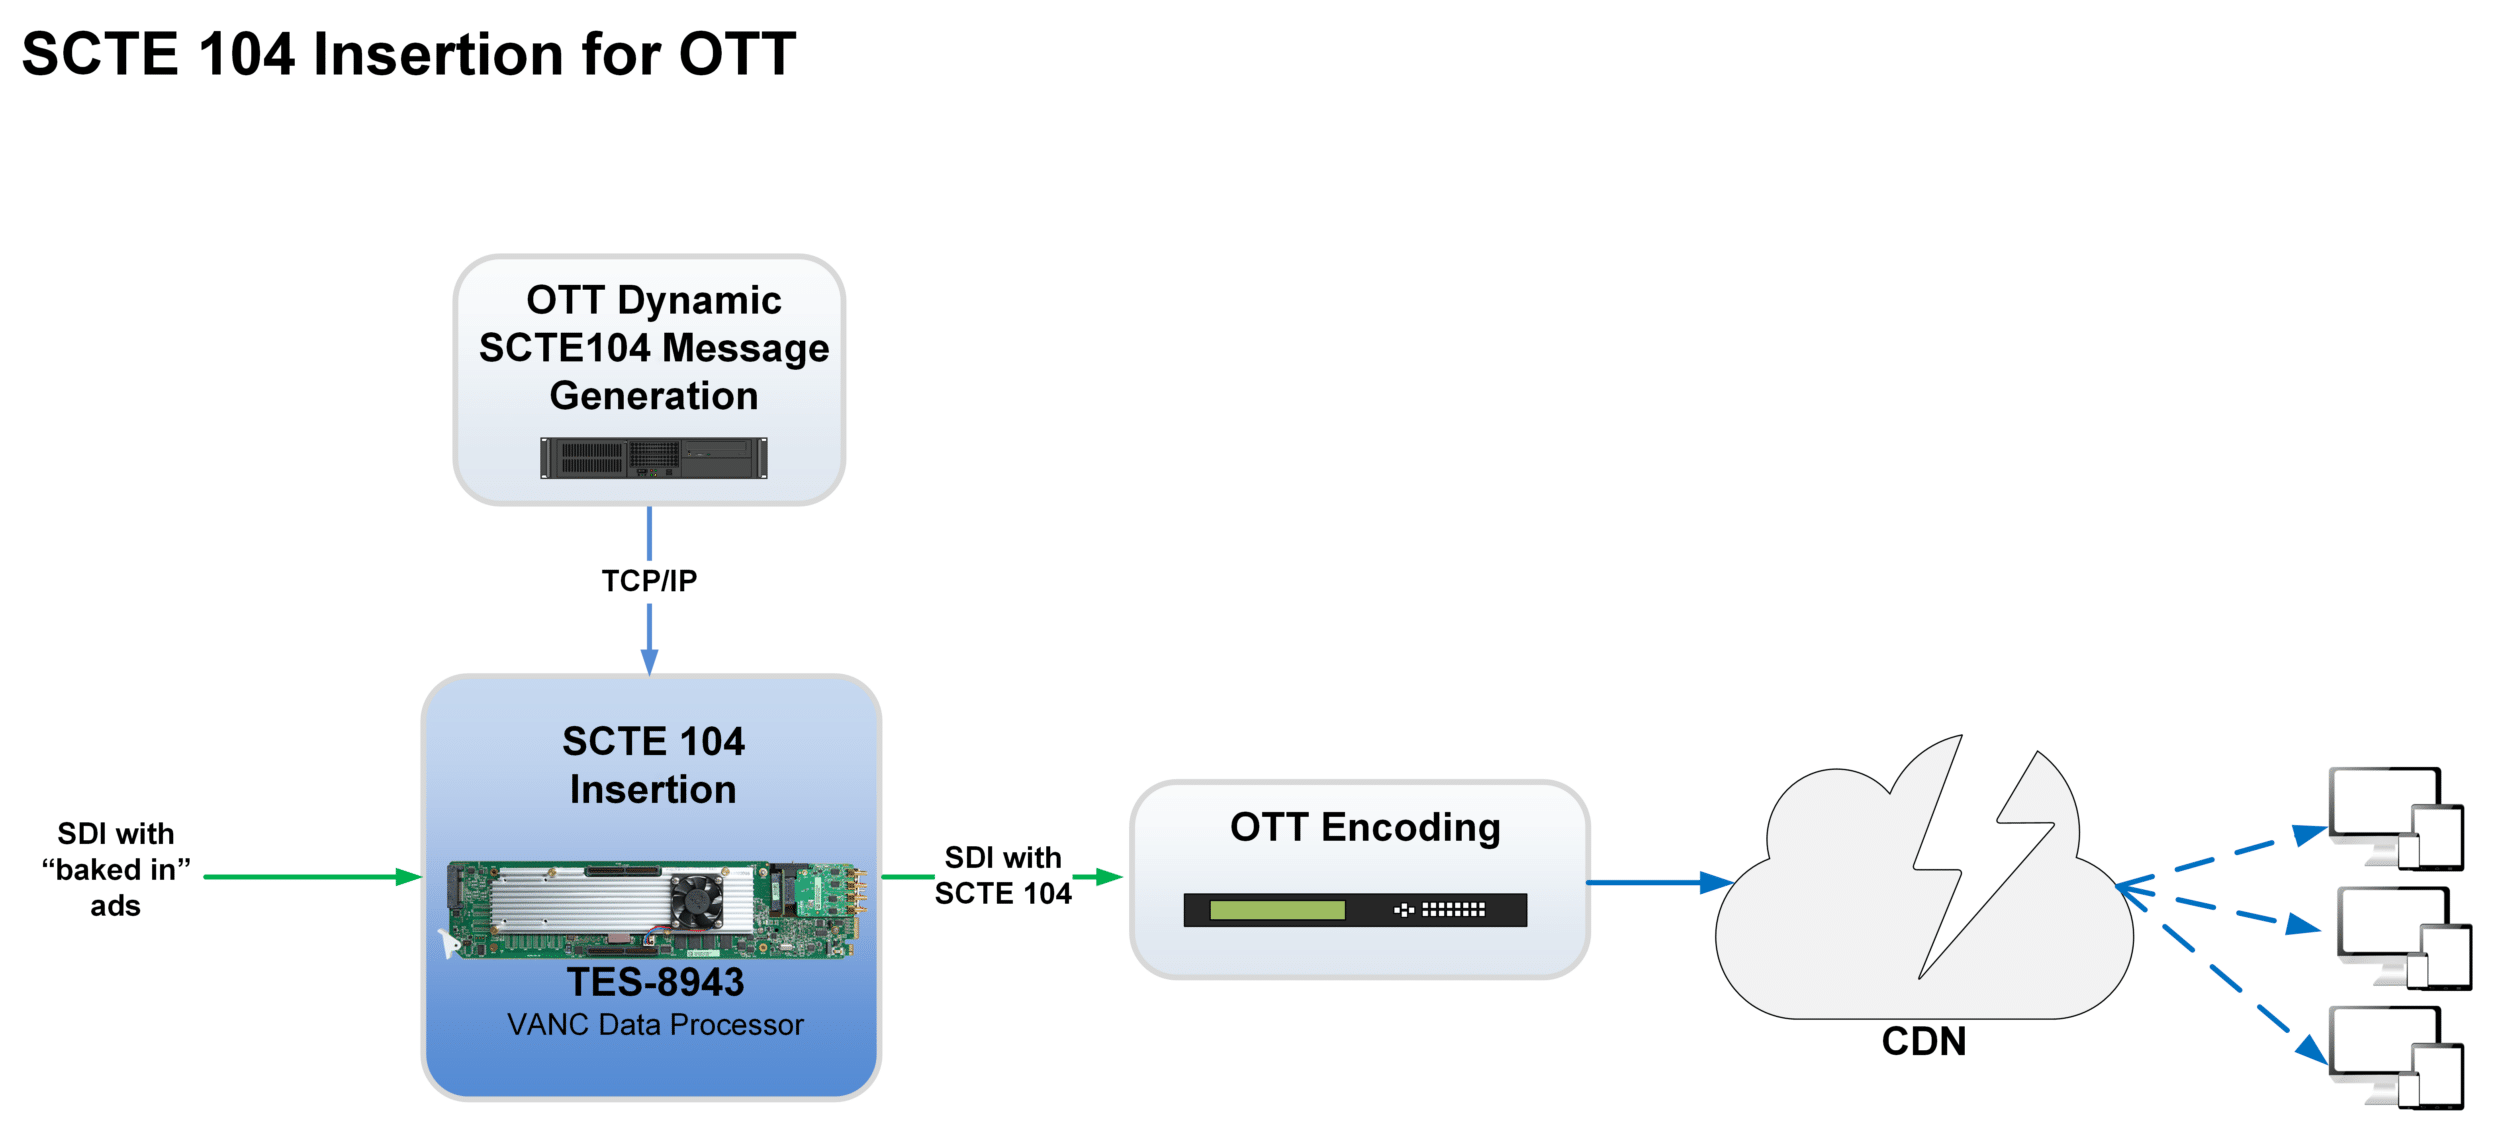 SCTE insertion for OTT